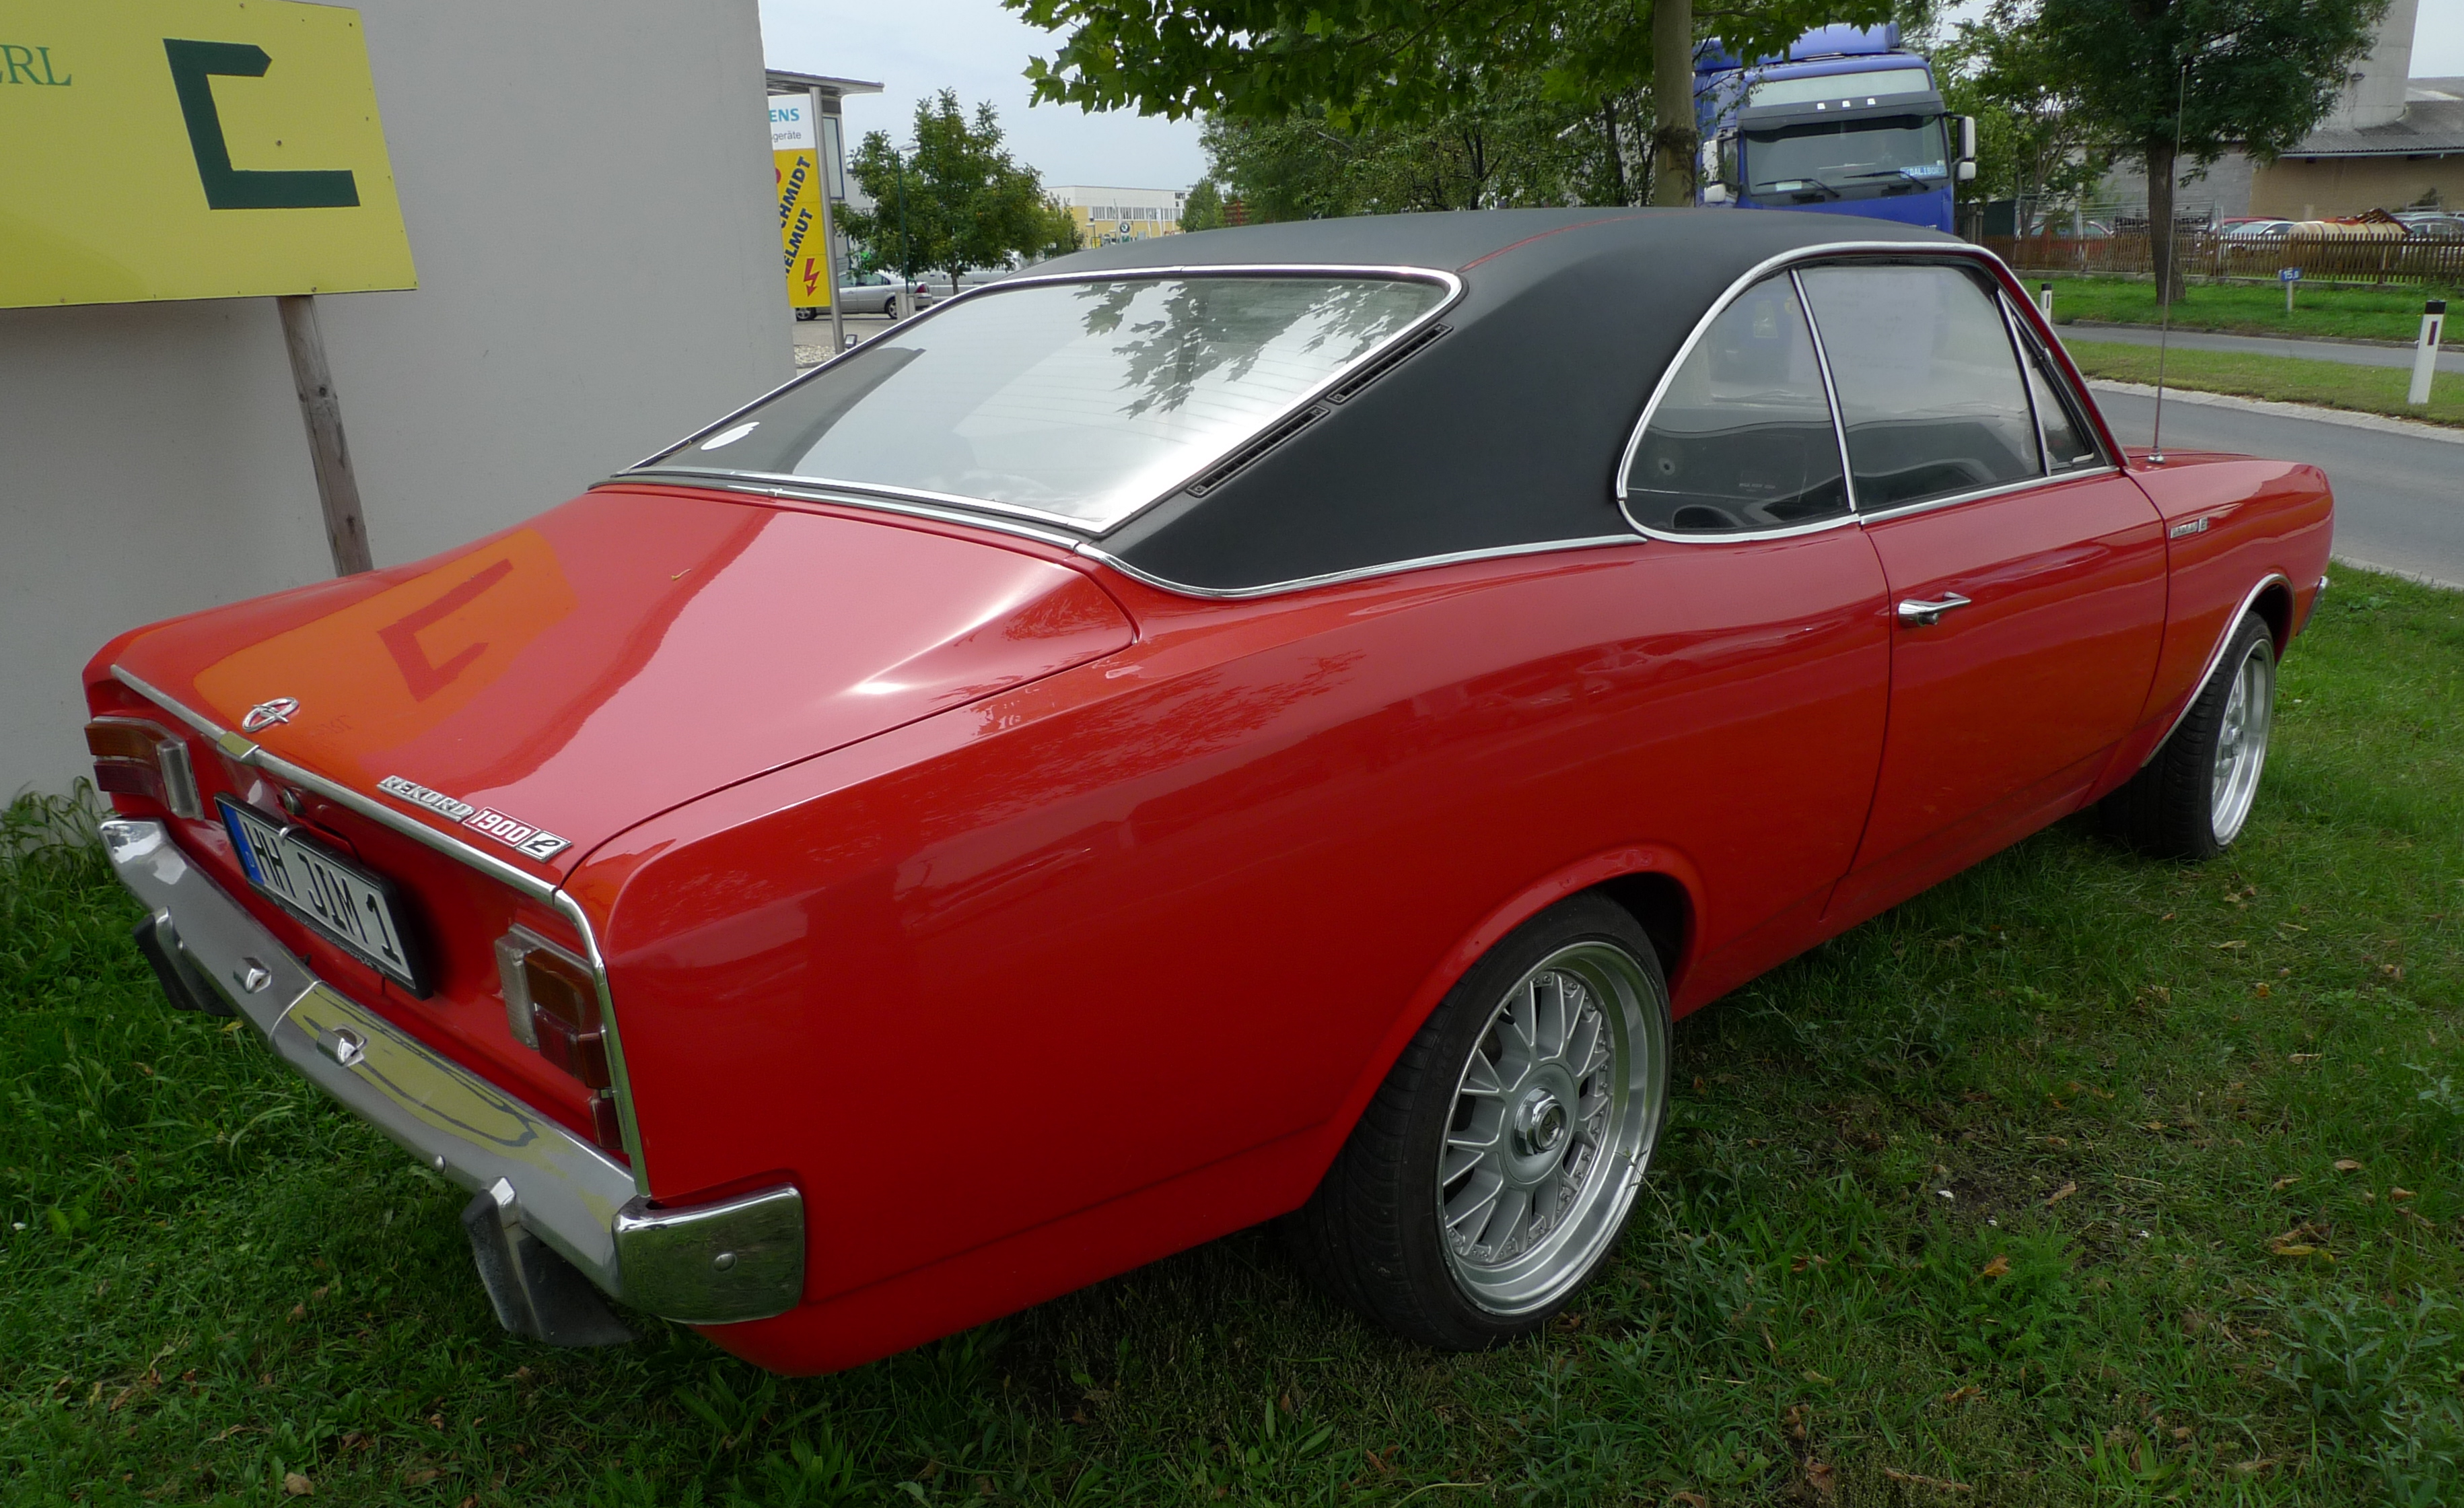 Opel Rekord 1900 L | Flickr - Photo Sharing!